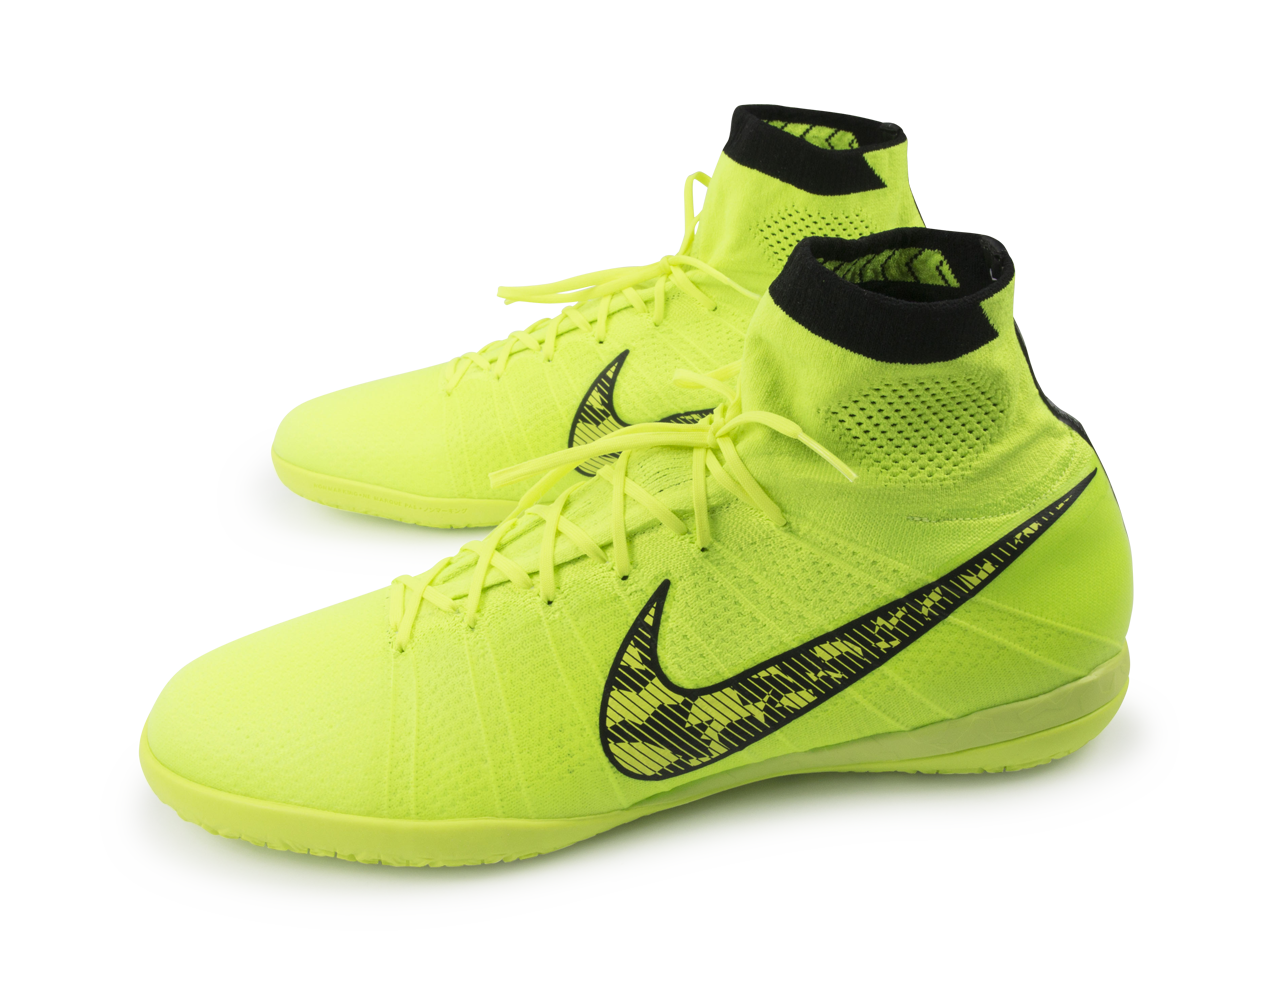 Nike Men's Elastico Superfly Indoor Soccer Shoes Volt/Black/Flash Lime